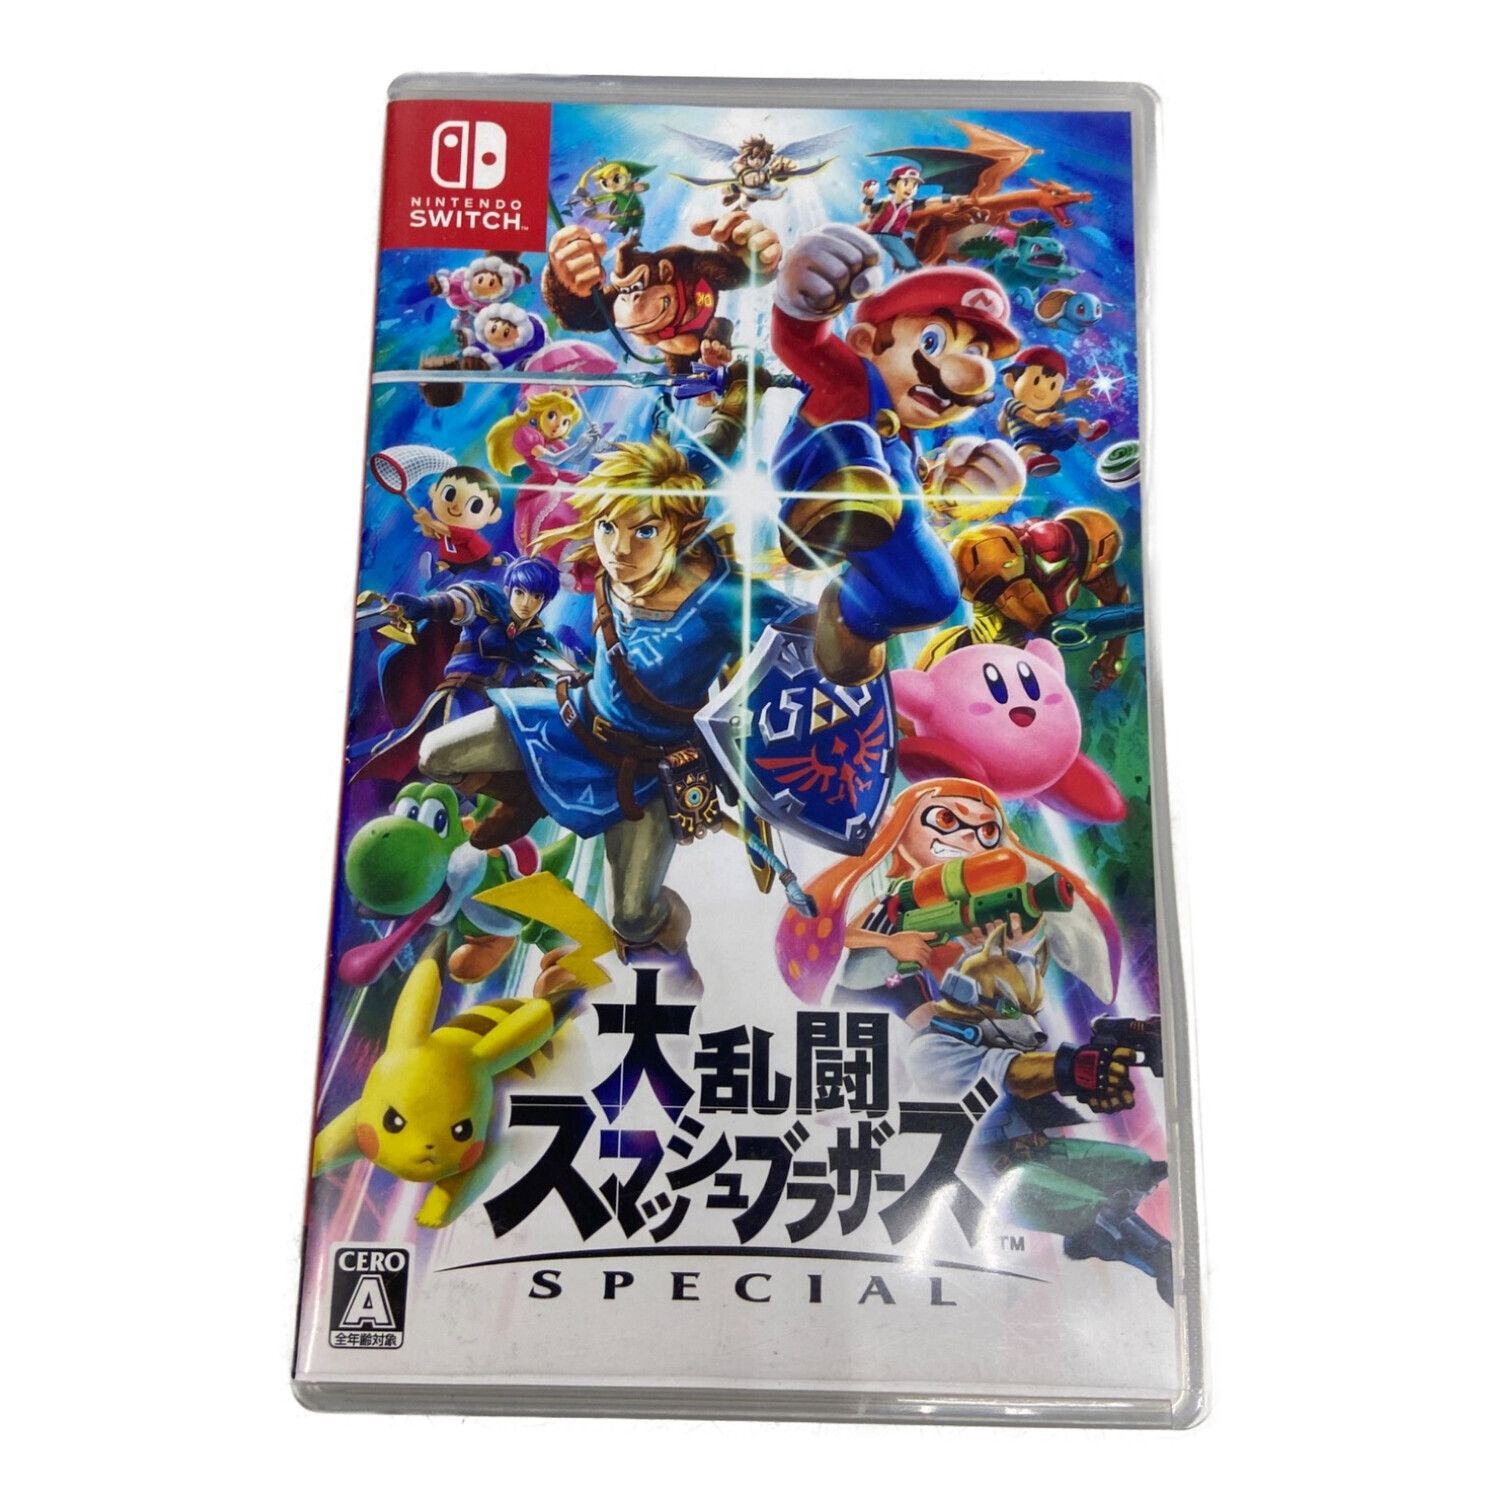 大乱闘スマッシュブラザーズ SPECIAL Nintendo Switch用ソフト CERO A (全年齢対象)